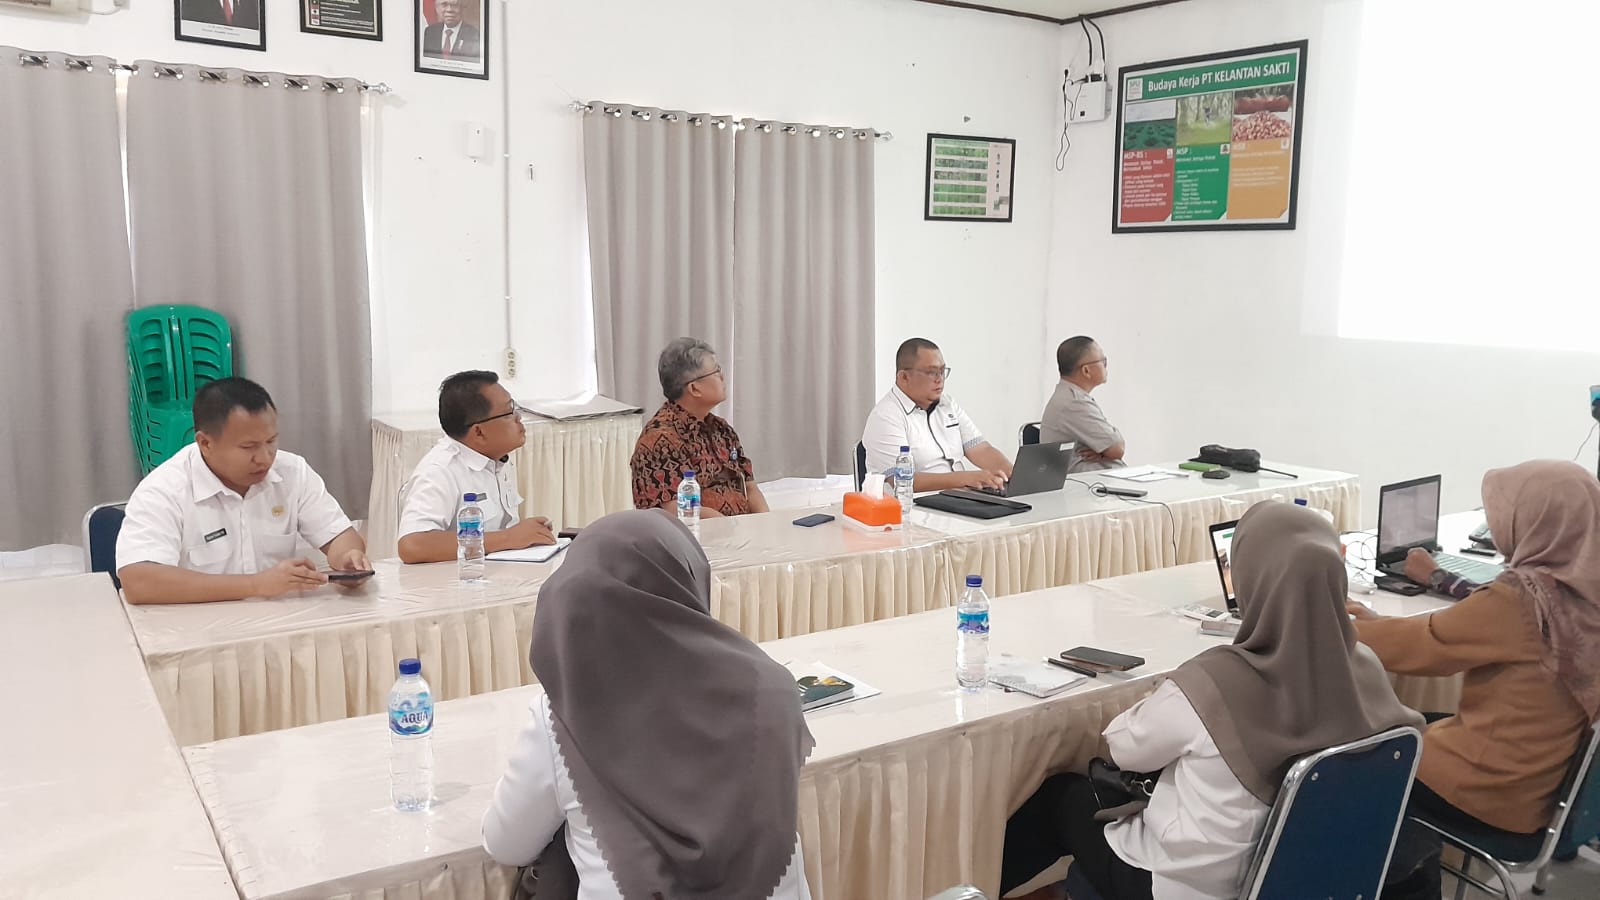 PT Kelantan Sakti Berhasil Menjadi Role Model Sektor Perkebunan di Bidang Ketenagakerjaan